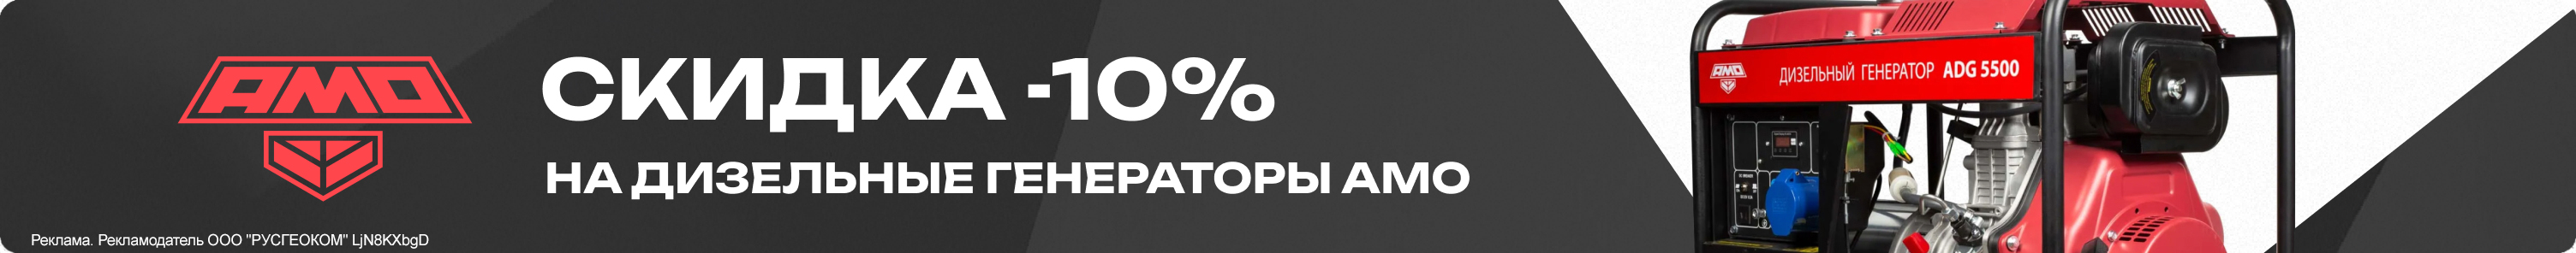 Дизельные генераторы AMO -10 % скидки